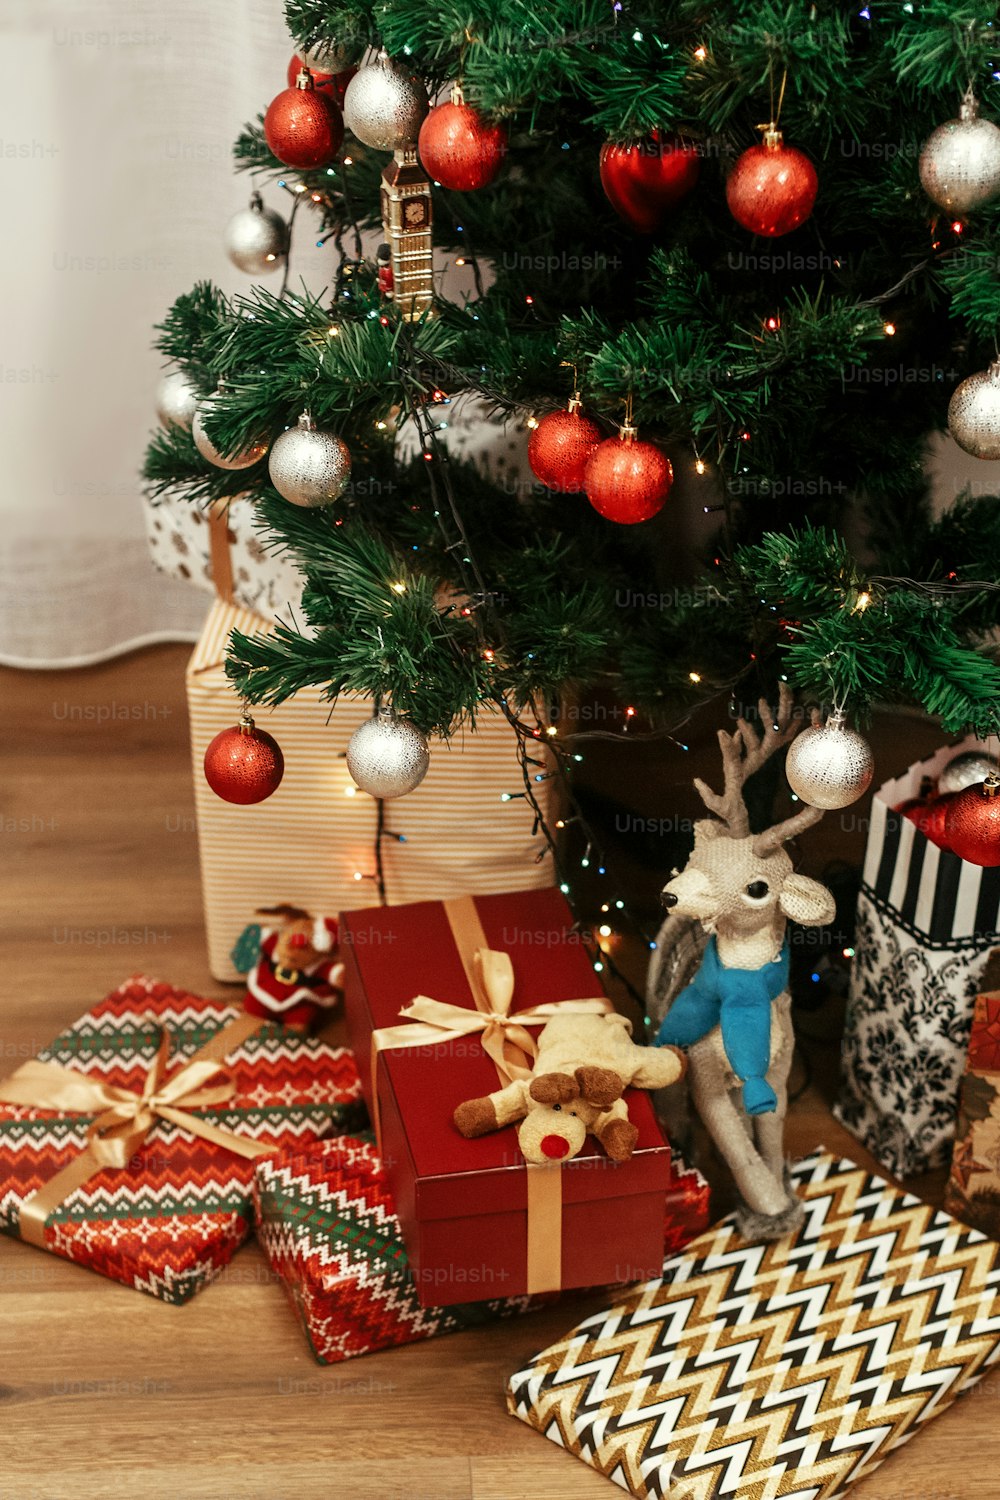 Luxury Christmas präsentiert Spielzeug in modernem Geschenkpapier. Stilvolle goldene Geschenke unter schönem Weihnachtsbaum im Zimmer. Konzept der saisonalen Grüße. Platz für Text. Weihnachtsmann